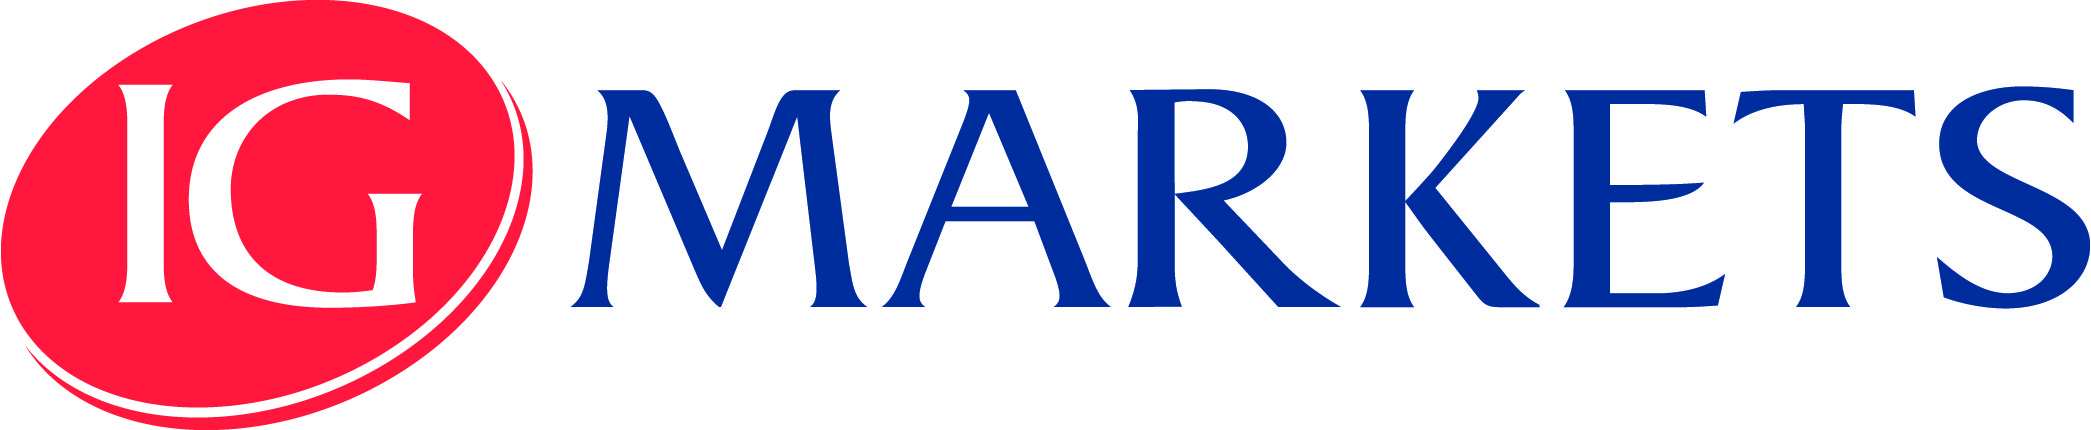 IG-Markets-logo